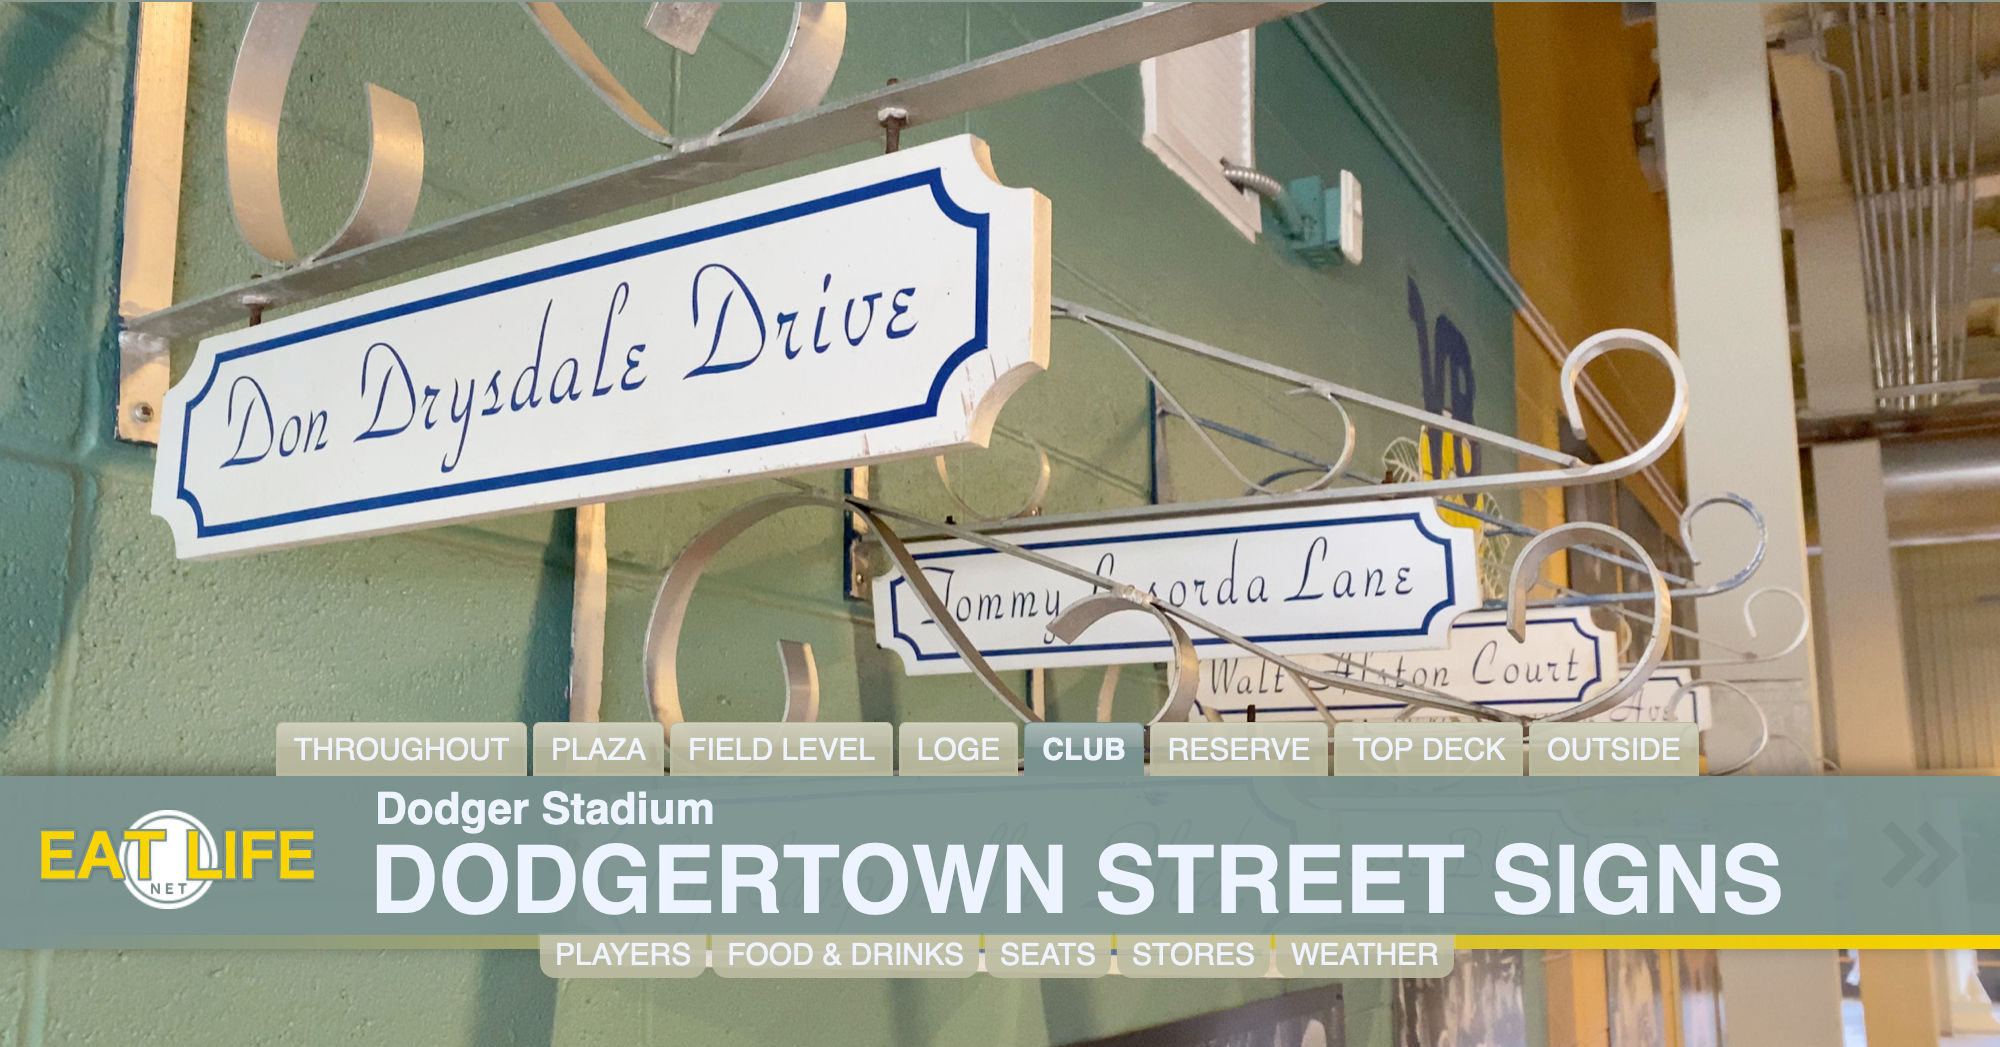 Dodgertown Street Signs